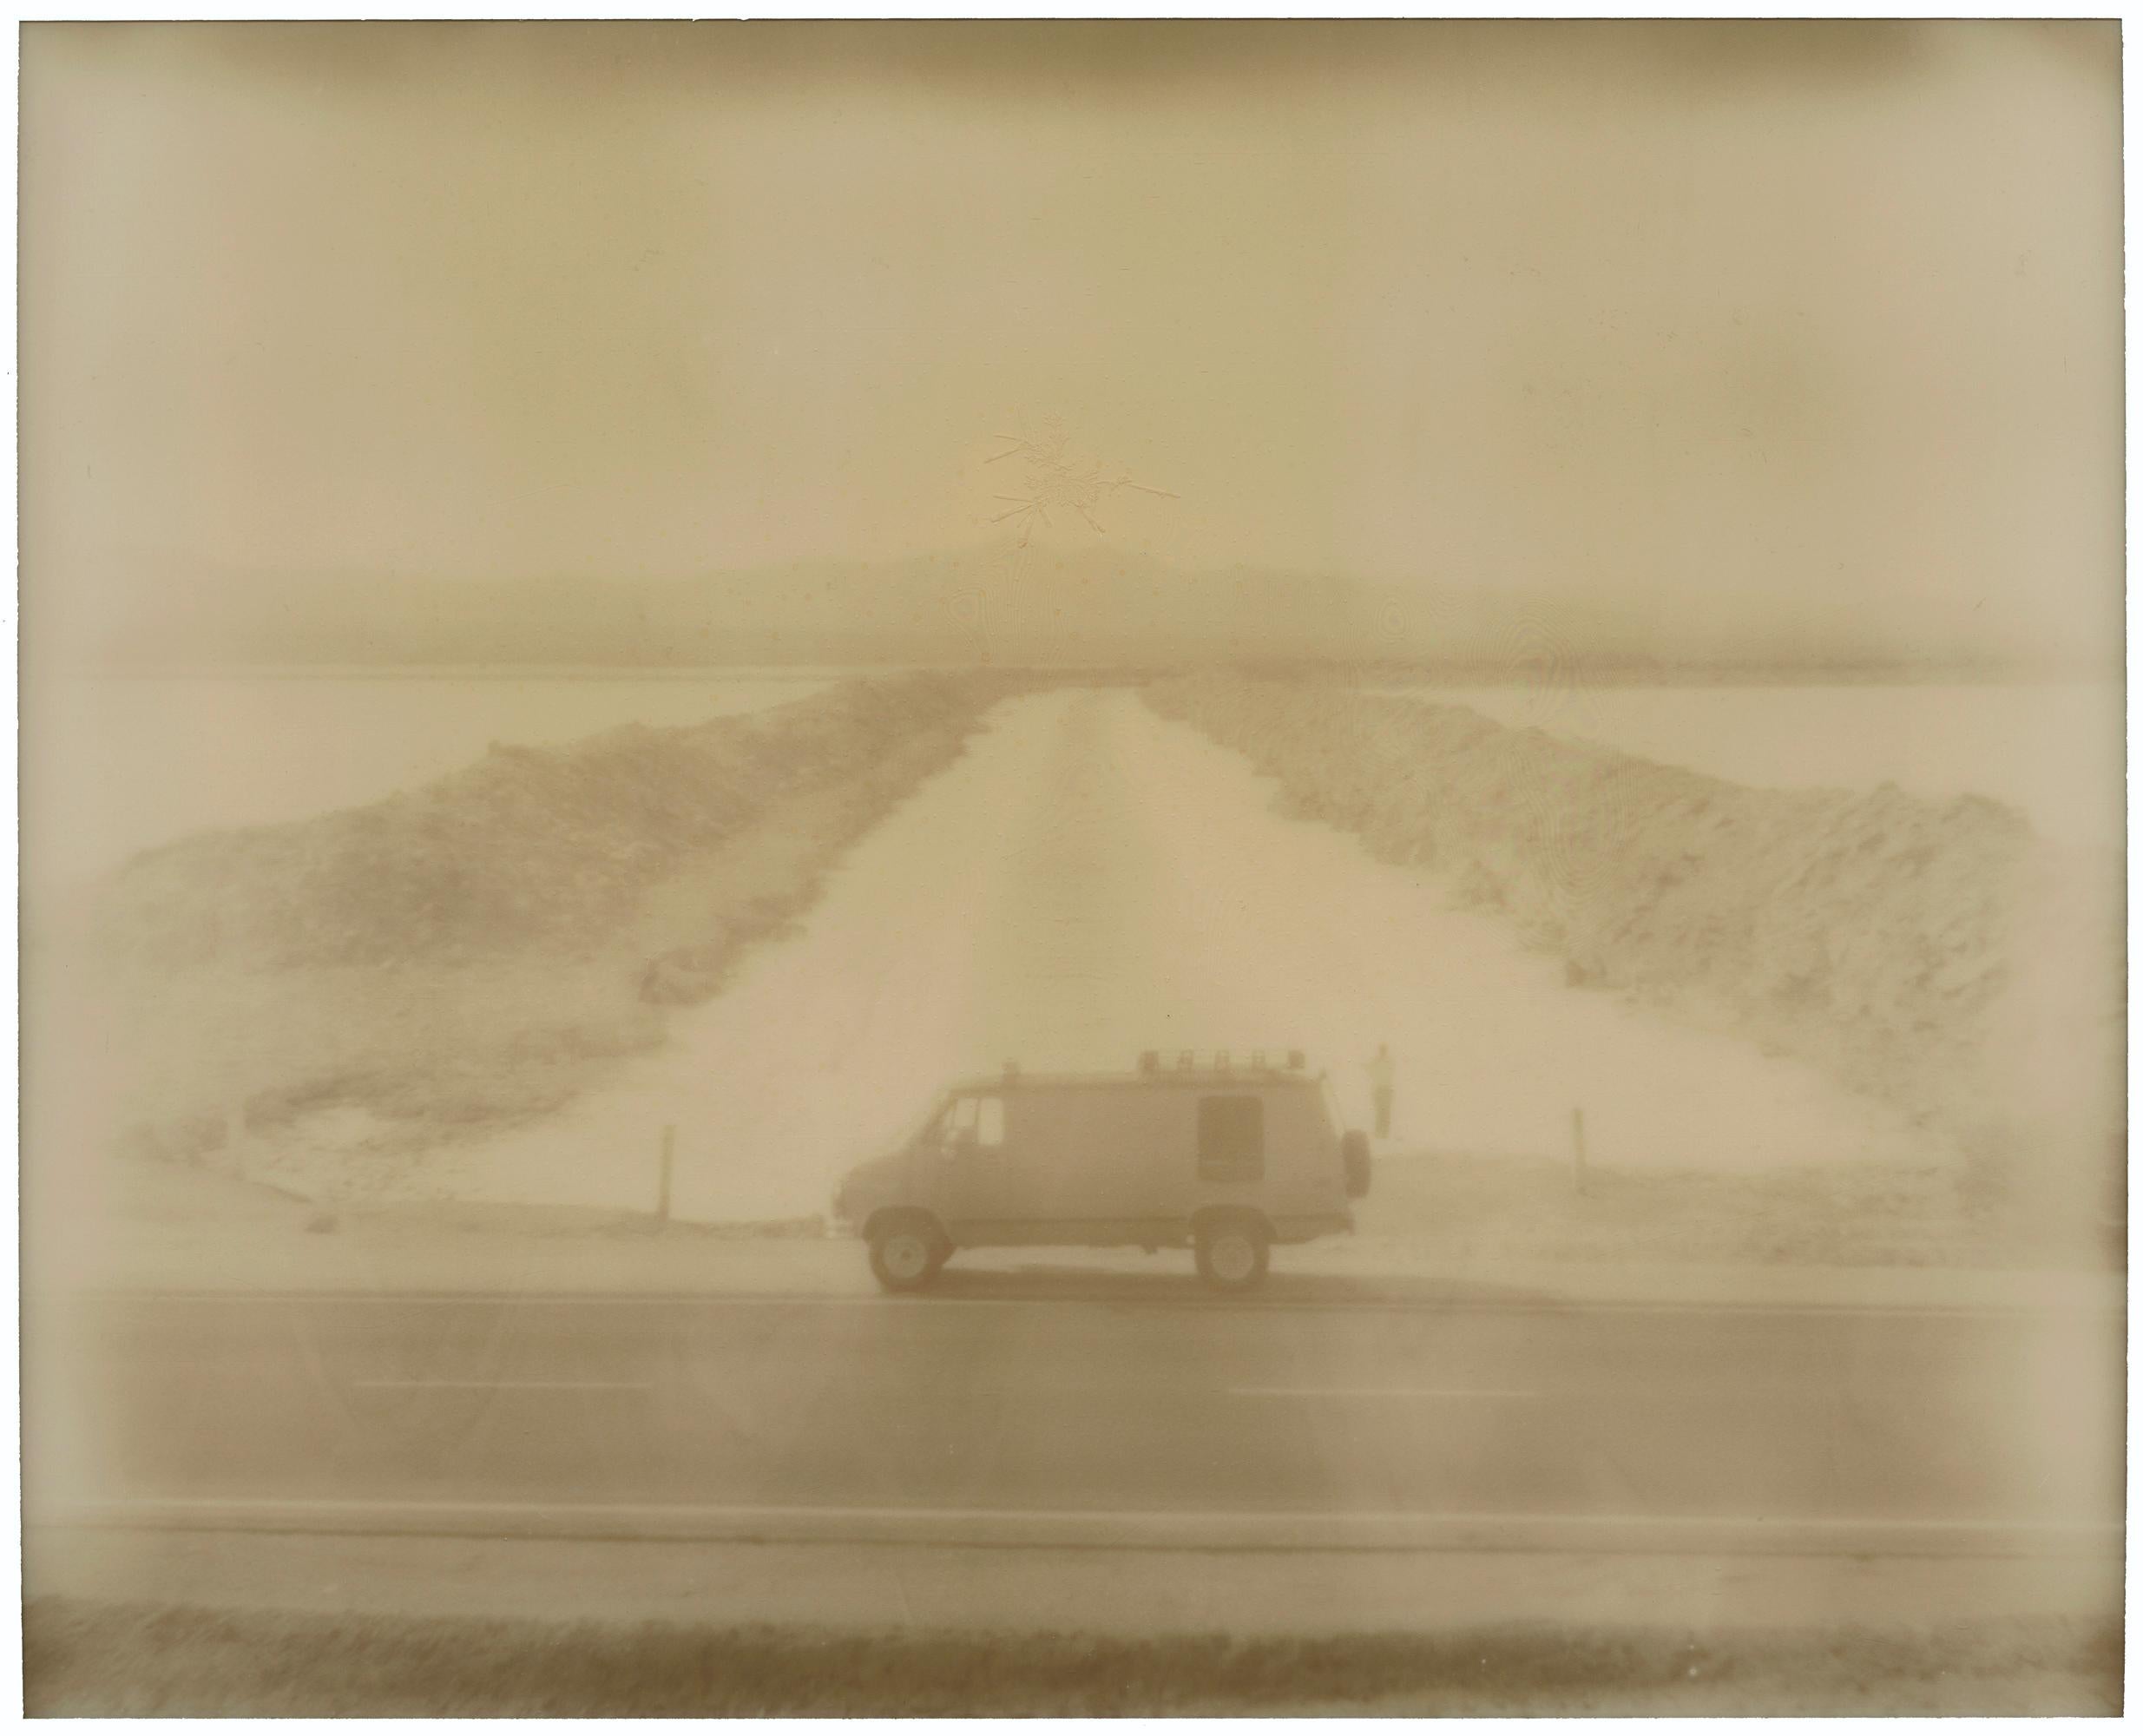 Amboy Road (Kalifornien Badlands) – Zeitgenössisch, Polaroid, Landschaft